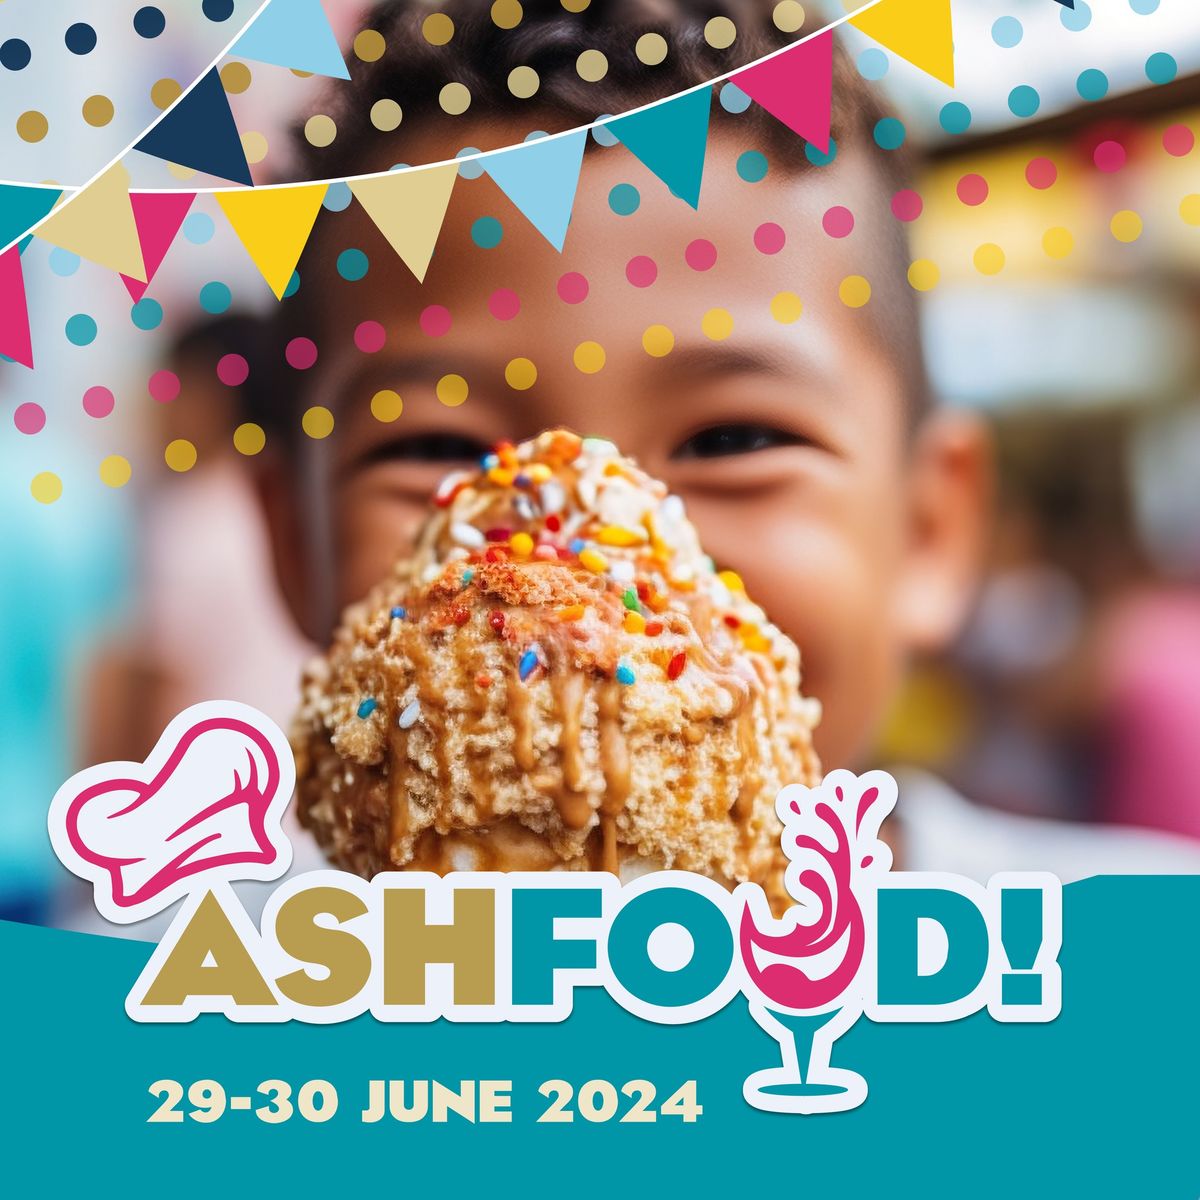 ASHFOOD! Festival 